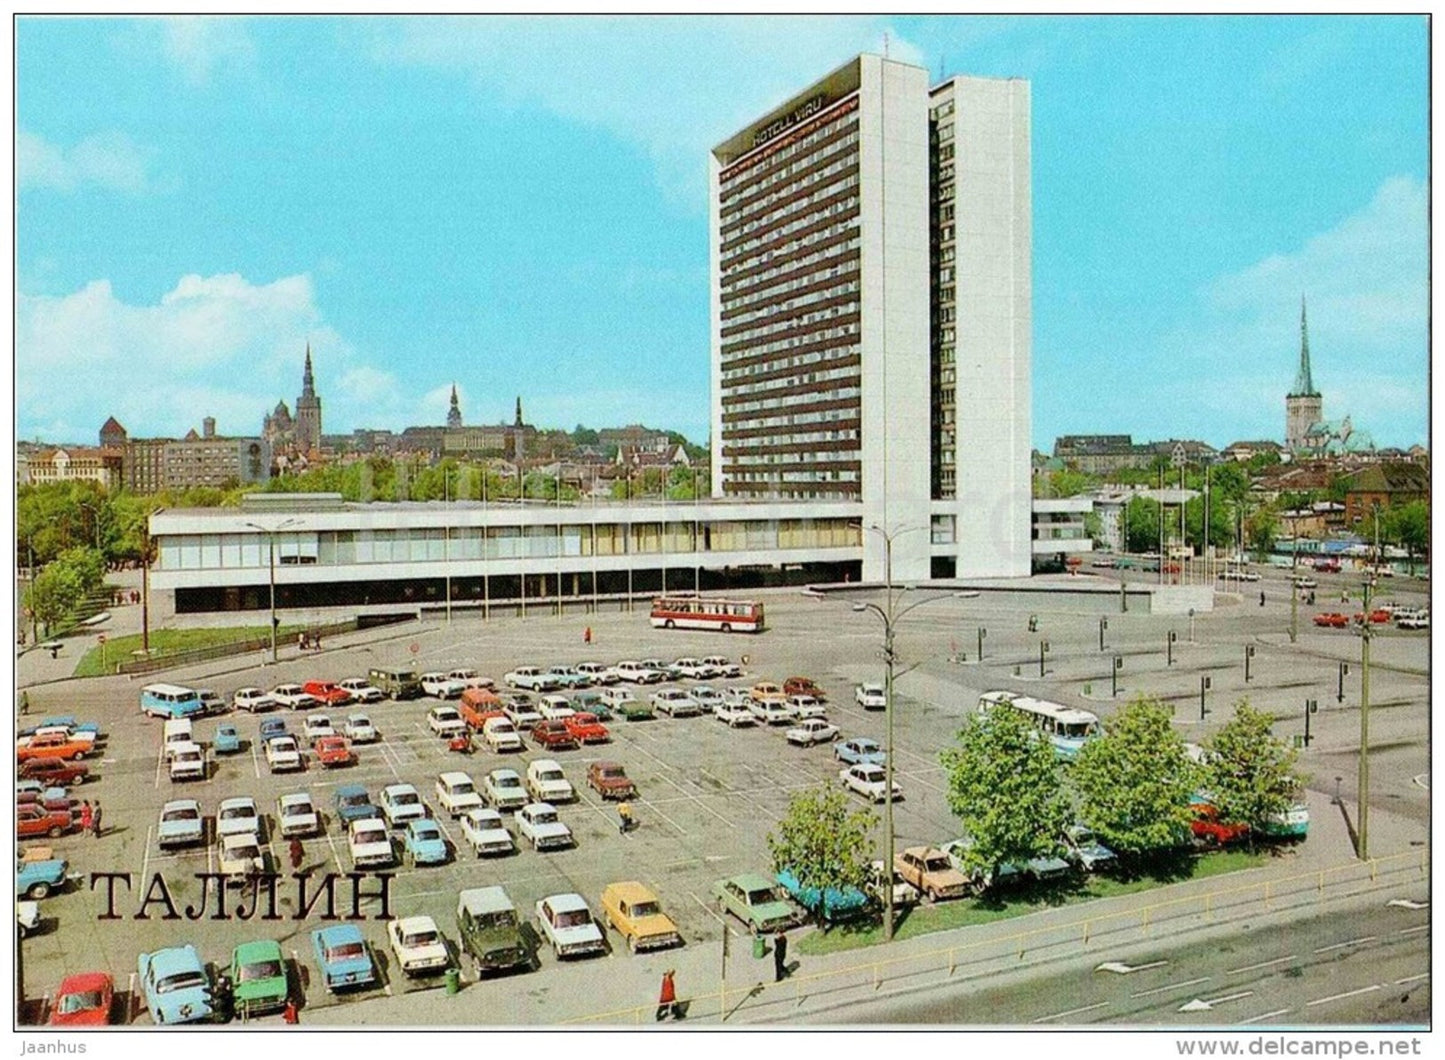 hotel Viru - bus Ikarus - Tallinn - 1987 - Estonia USSR - unused - JH Postcards